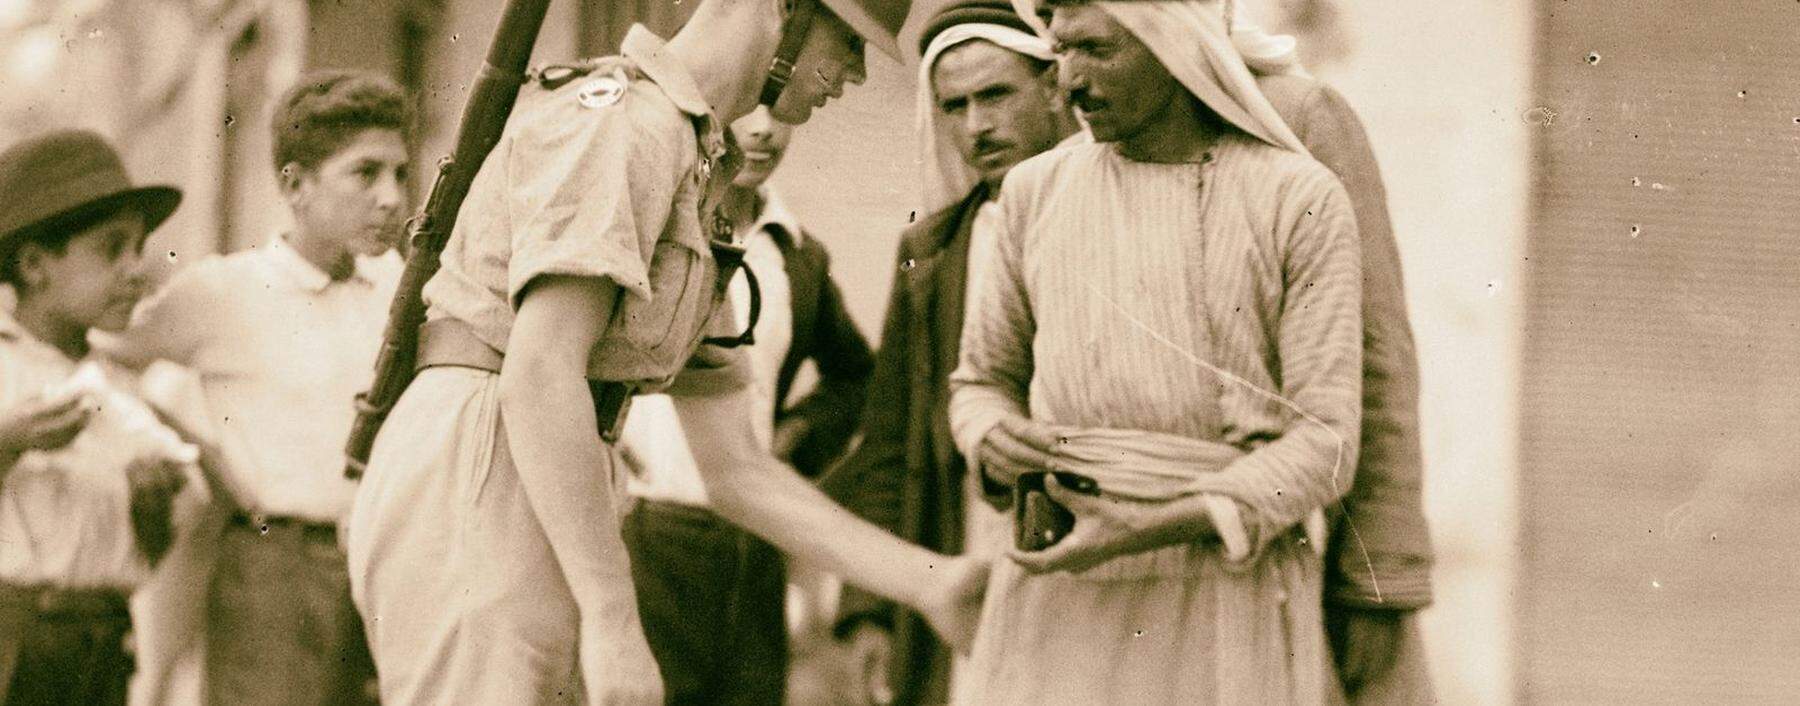 Ein britischer Soldat bei einer Durchsuchung arabischer Zivilisten in Palästina. 1936 begann eine Revolte der Araber gegen die Mandatsmacht.